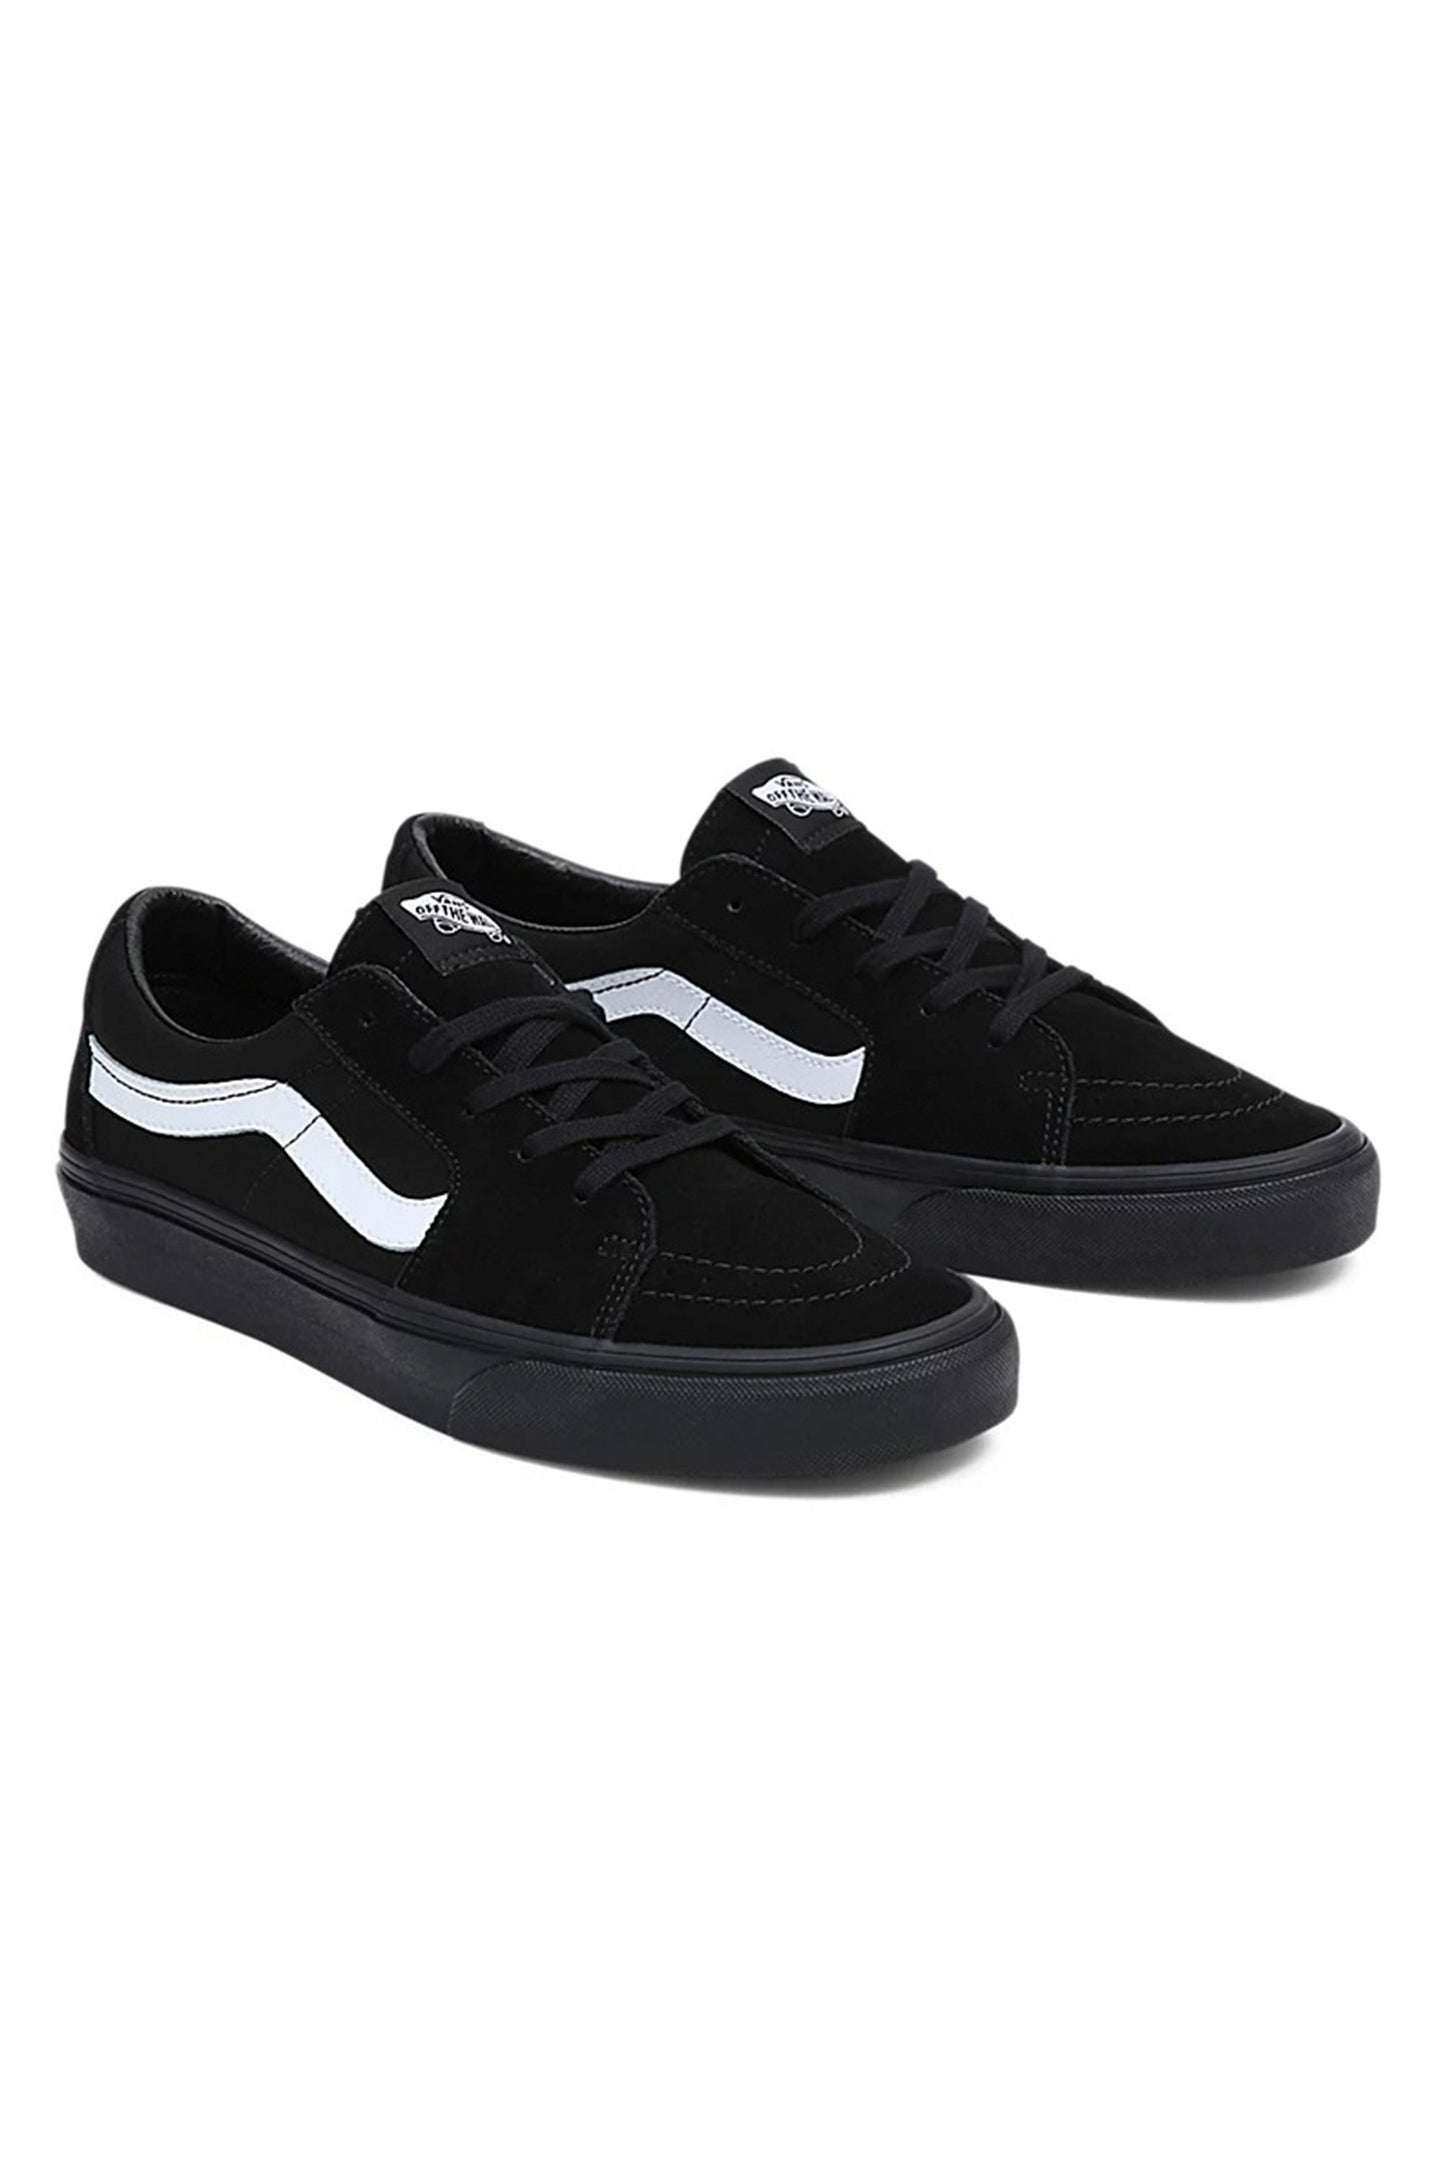 Pukas-Surf-Shop-vans-footwear-Vans-SK8-Low-black